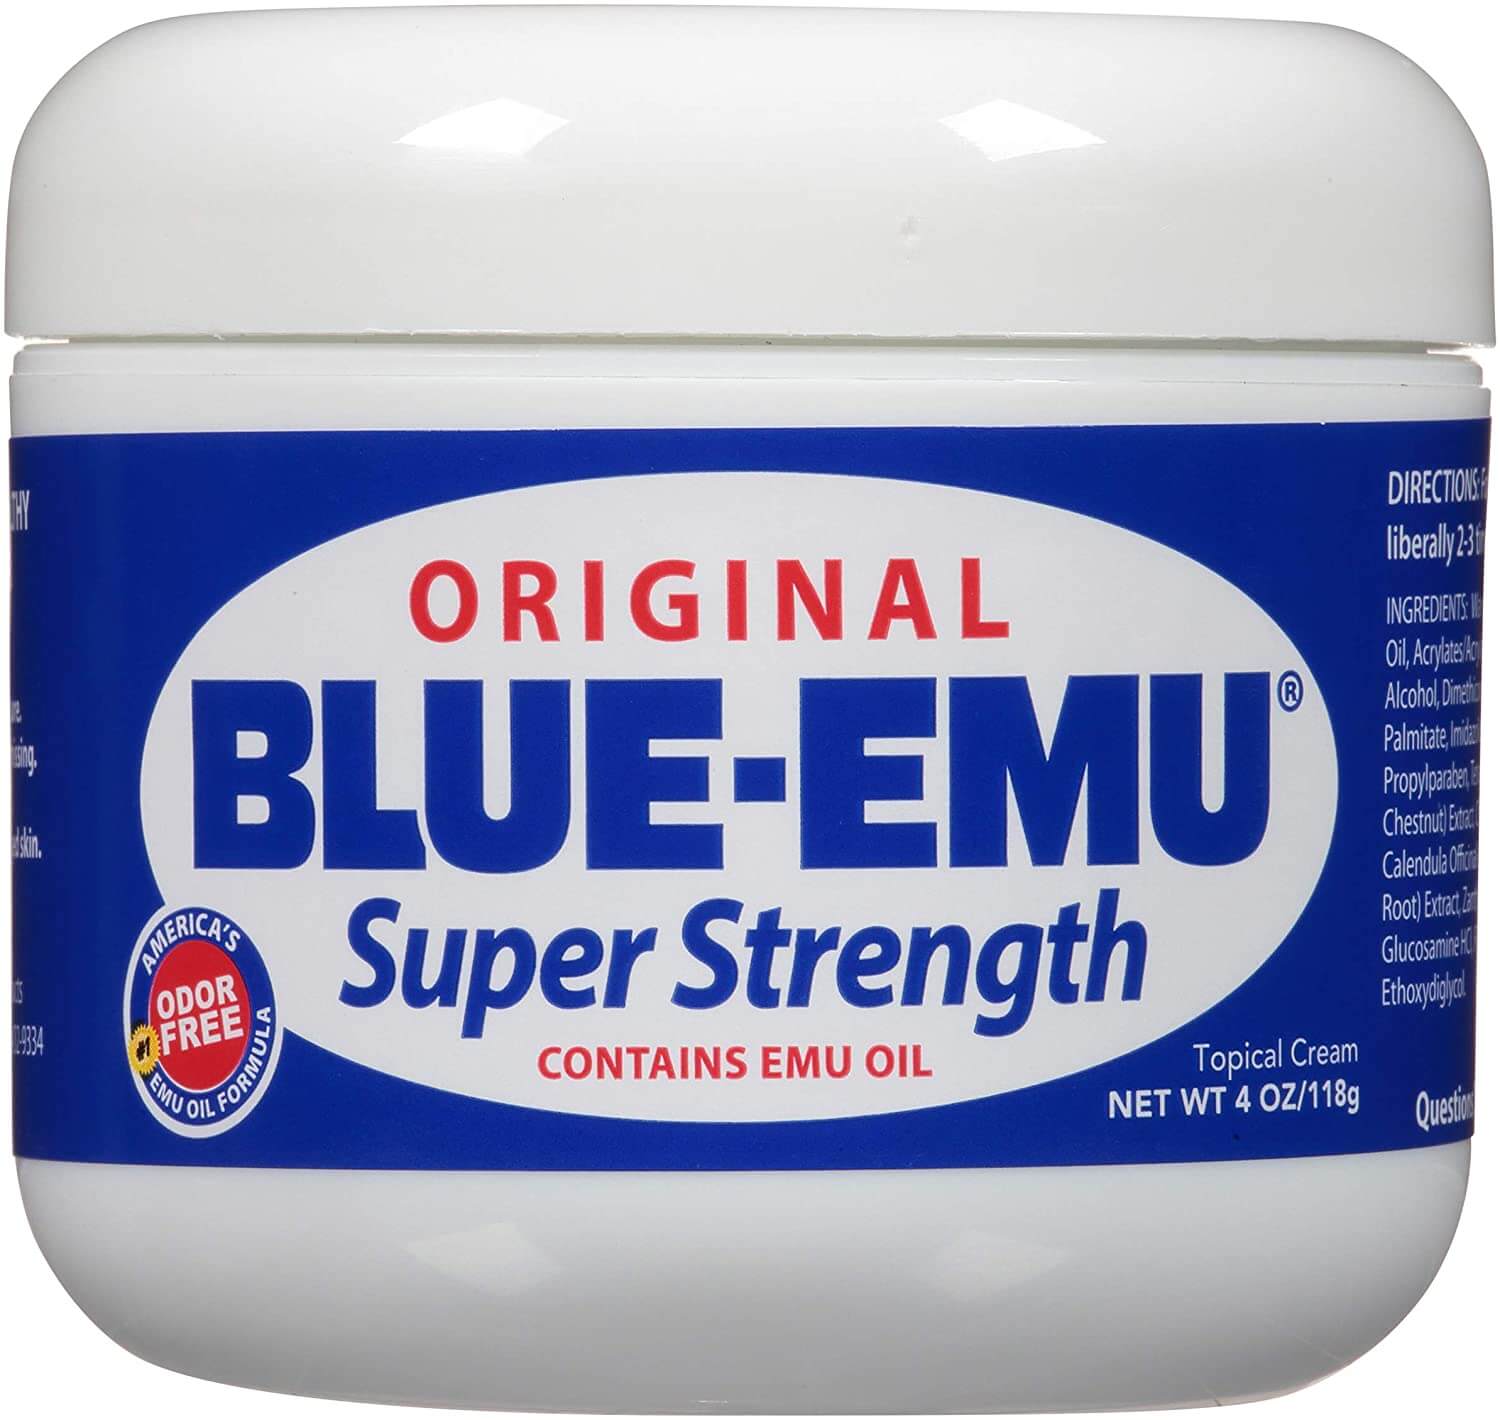 Blue Emu Original Topical Pain relief Cream